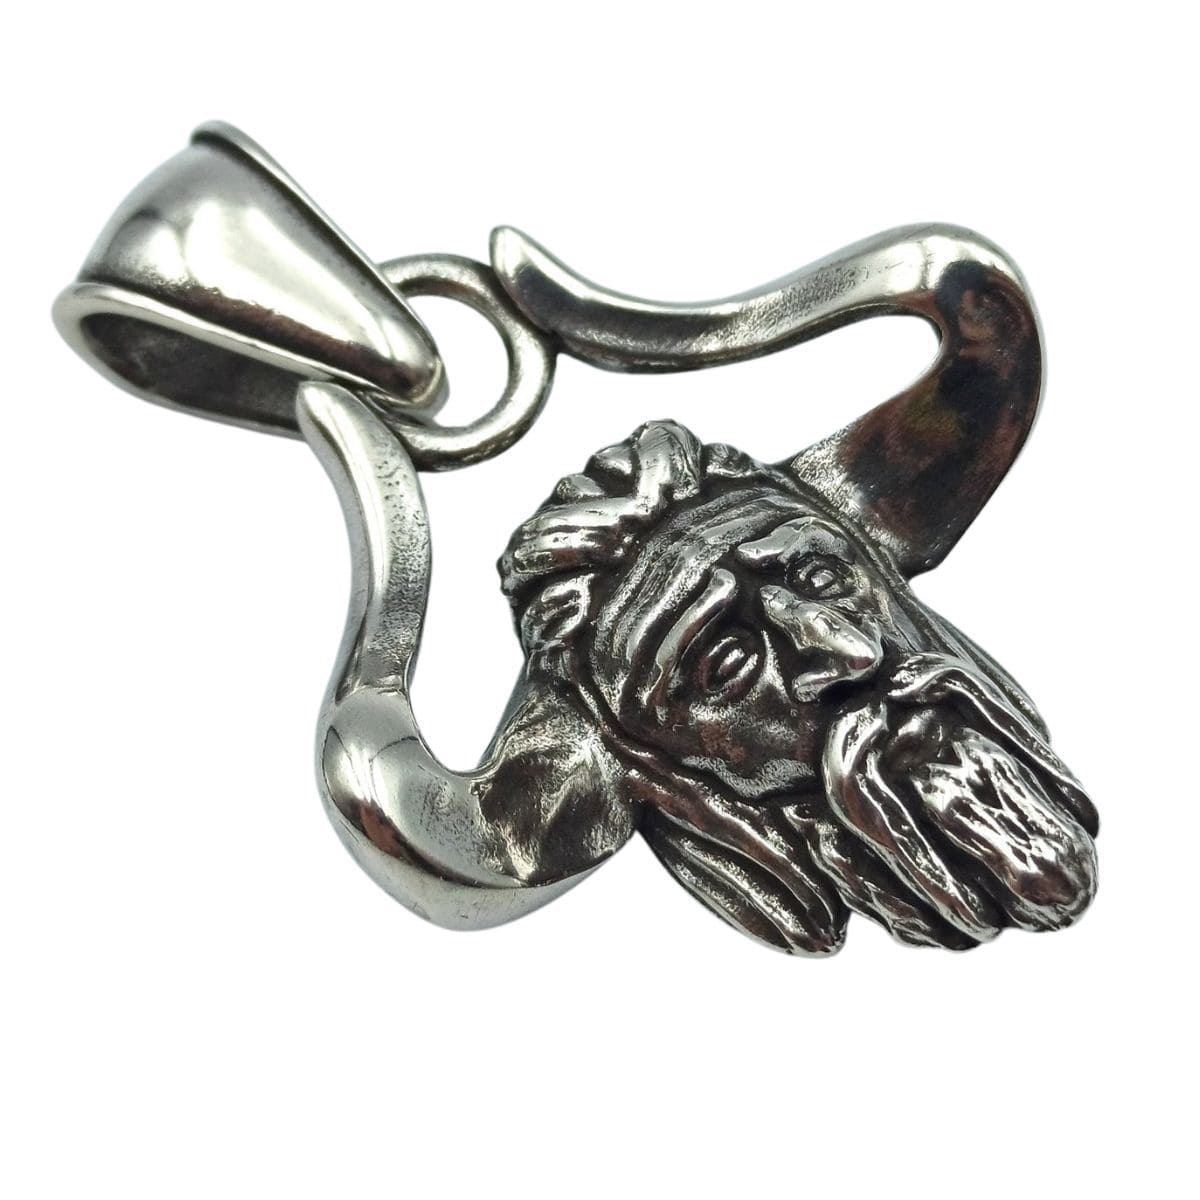 Veles Slavic Horned God silver pendant